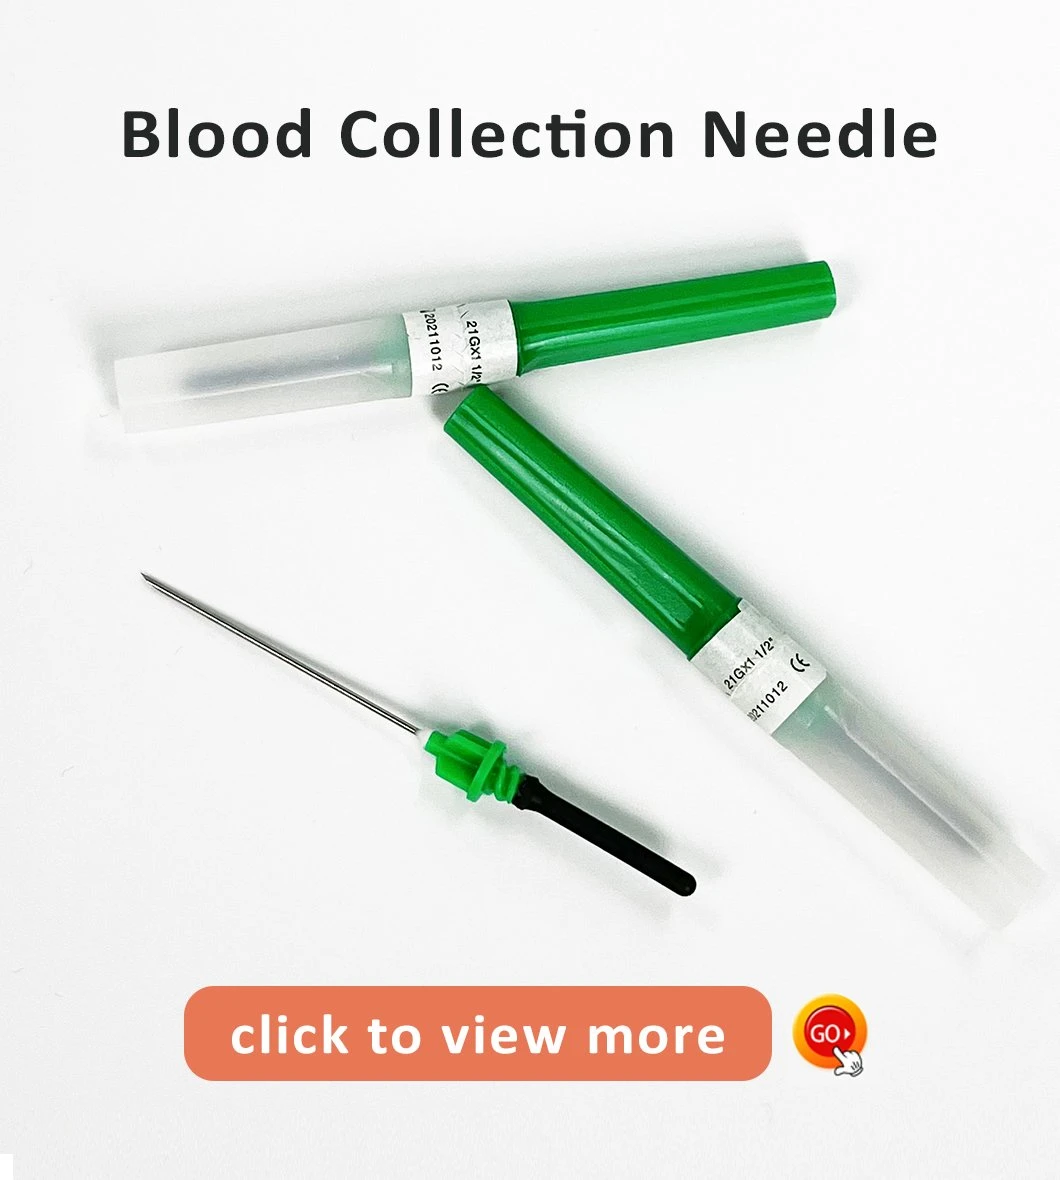 Agulha e tubo de coleta de sangue a vácuo descartável médico de venda imperdível